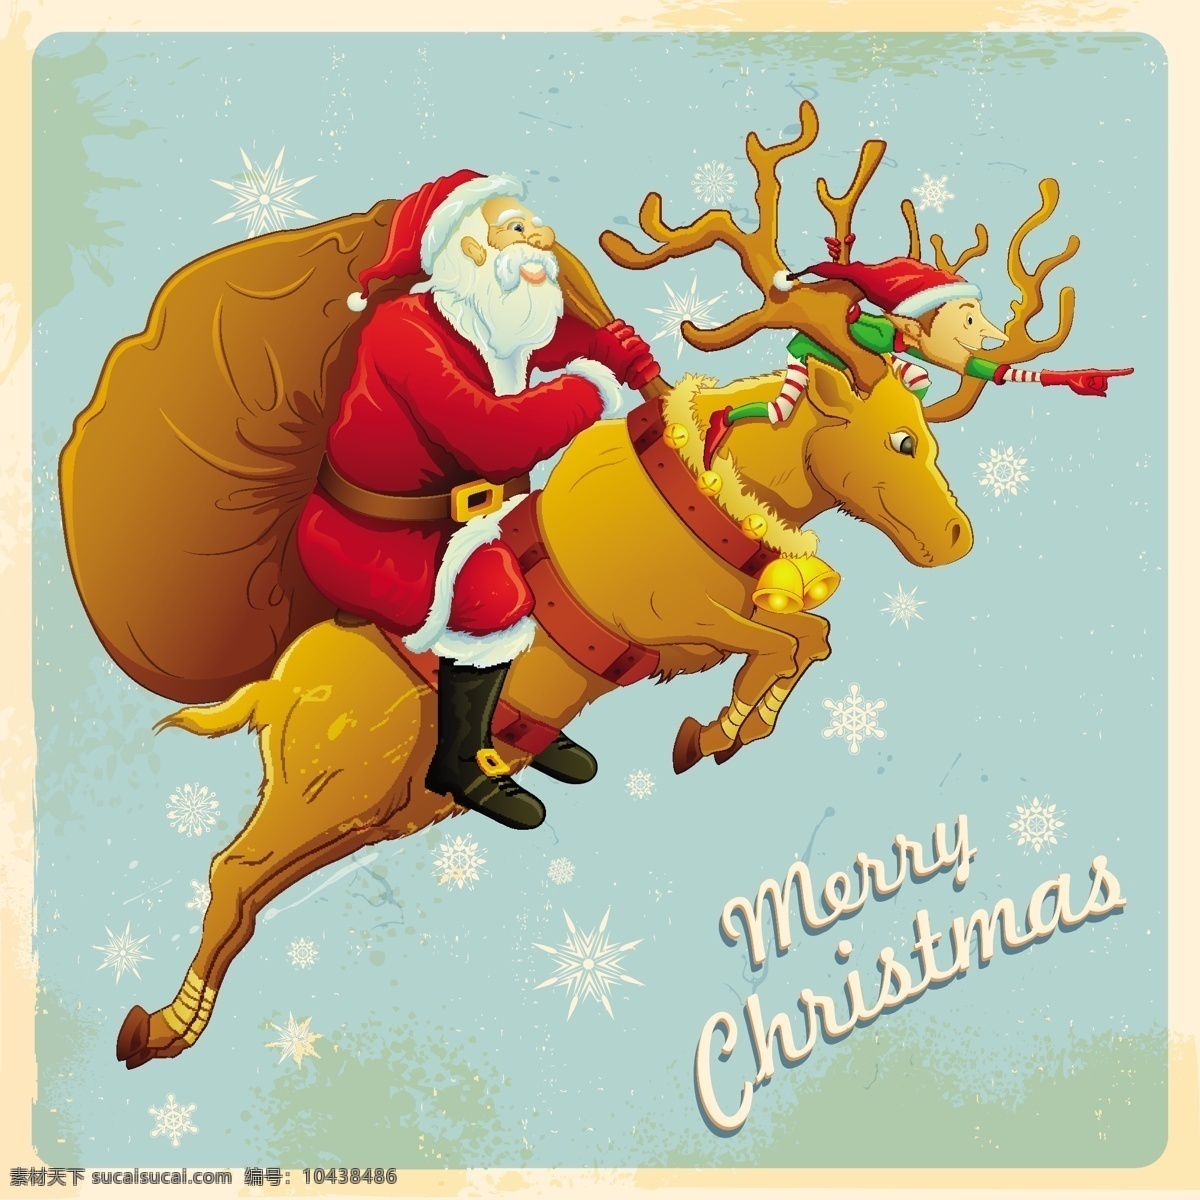 圣诞老人 驯鹿 矢量 雪花 圣诞节 礼包 merry christmas 精灵 矢量图